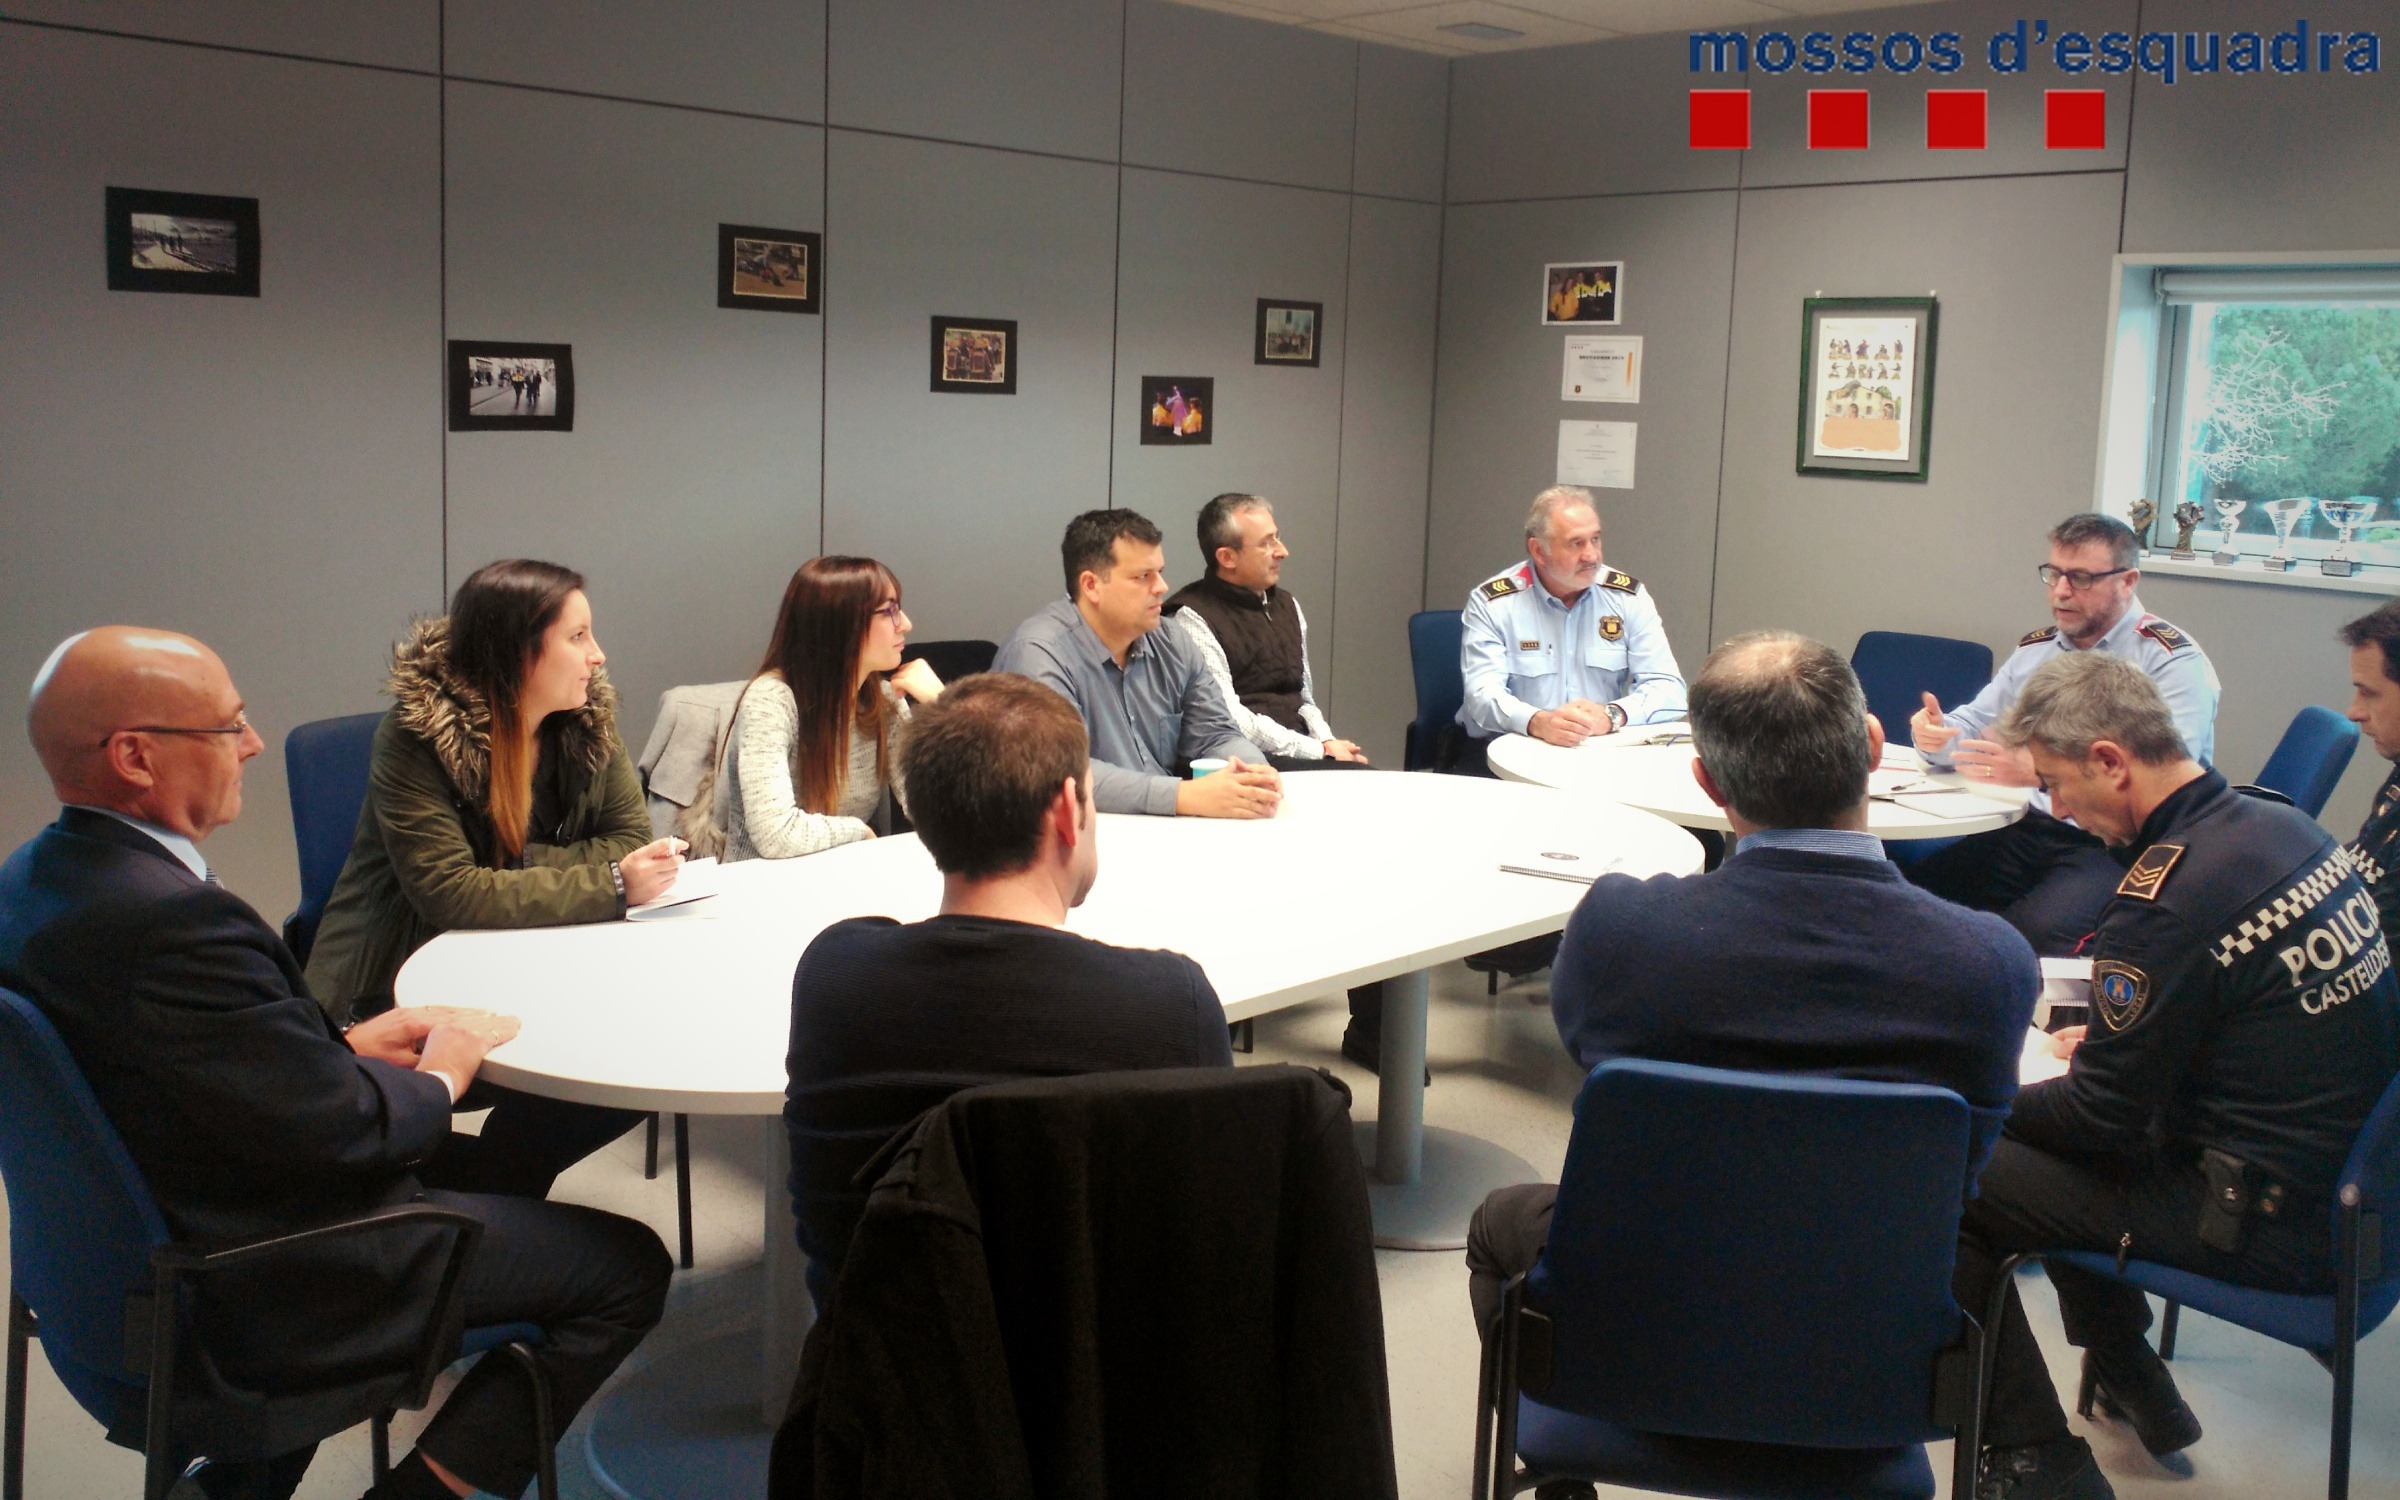 La reunió es va celebrar a les dependències de la comissaria de districte de Castelldefels